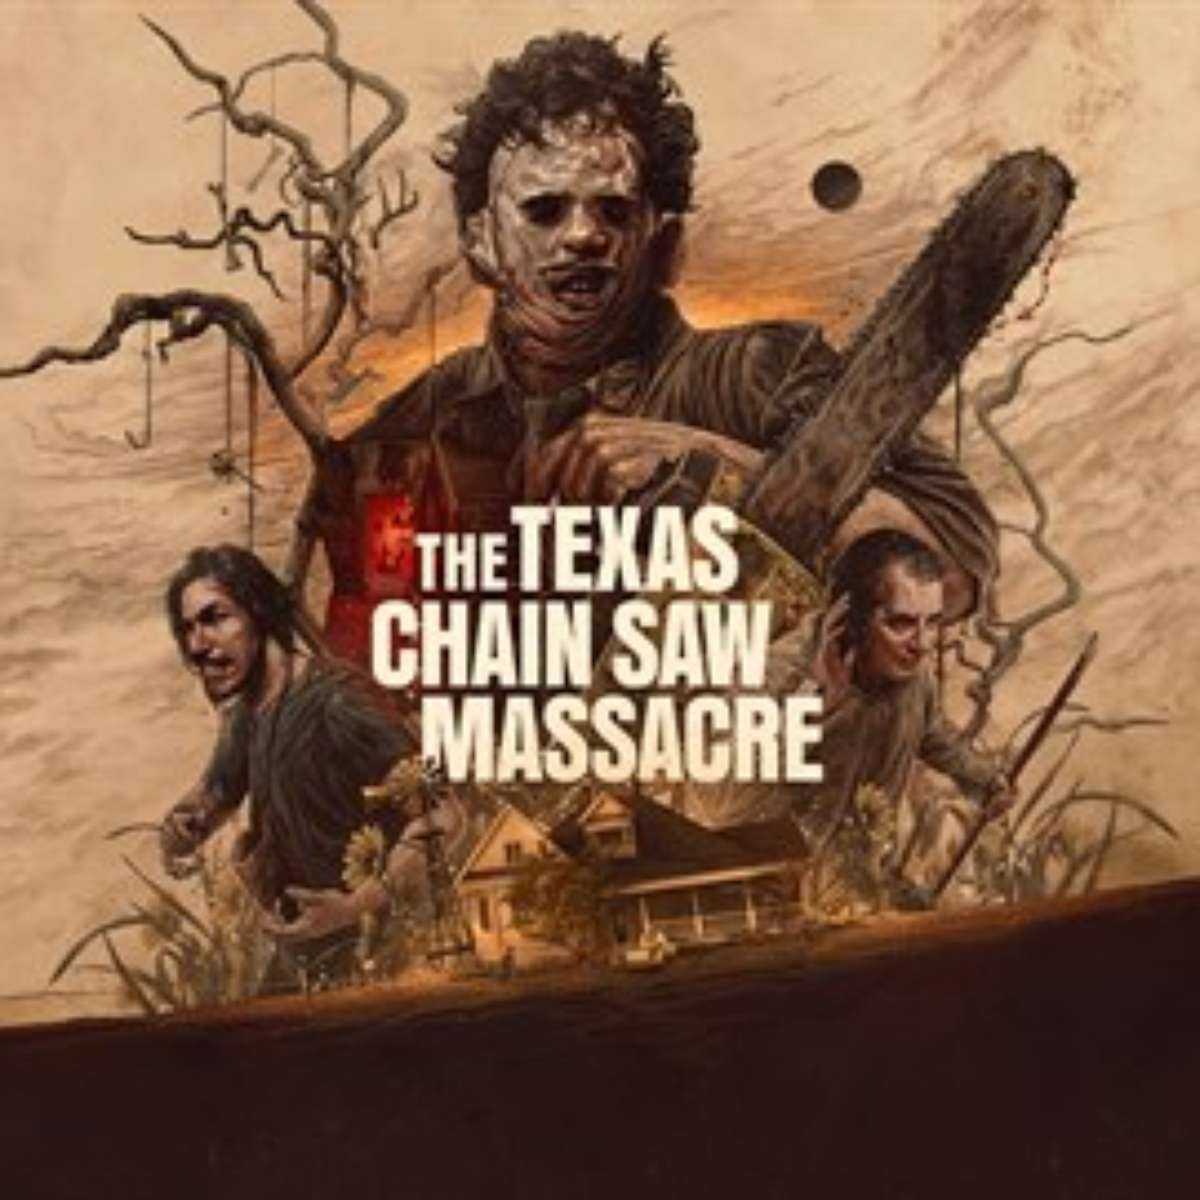 SABADO DO TERROR - JOGANDO COM A GALERA! - (The Texas Chain Saw Massacre) 